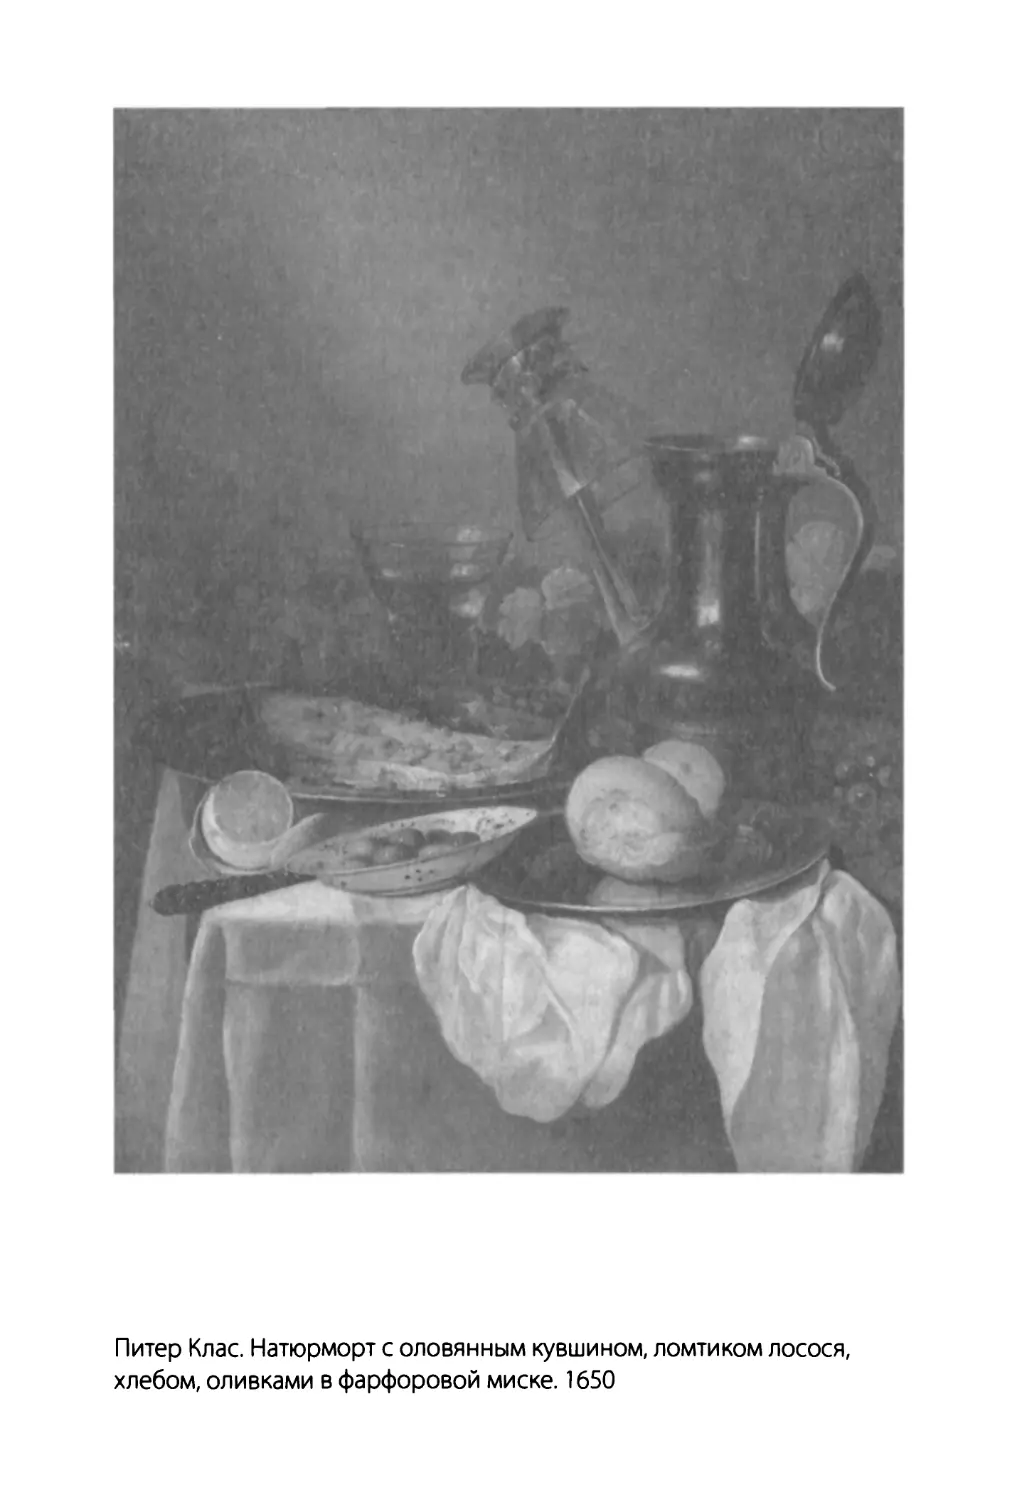 Питер Клас. Натюрморт с оловянным кувшином, ломтиком лосося, хлебом, оливками в фарфоровой миске. 1650. Частное собрание.